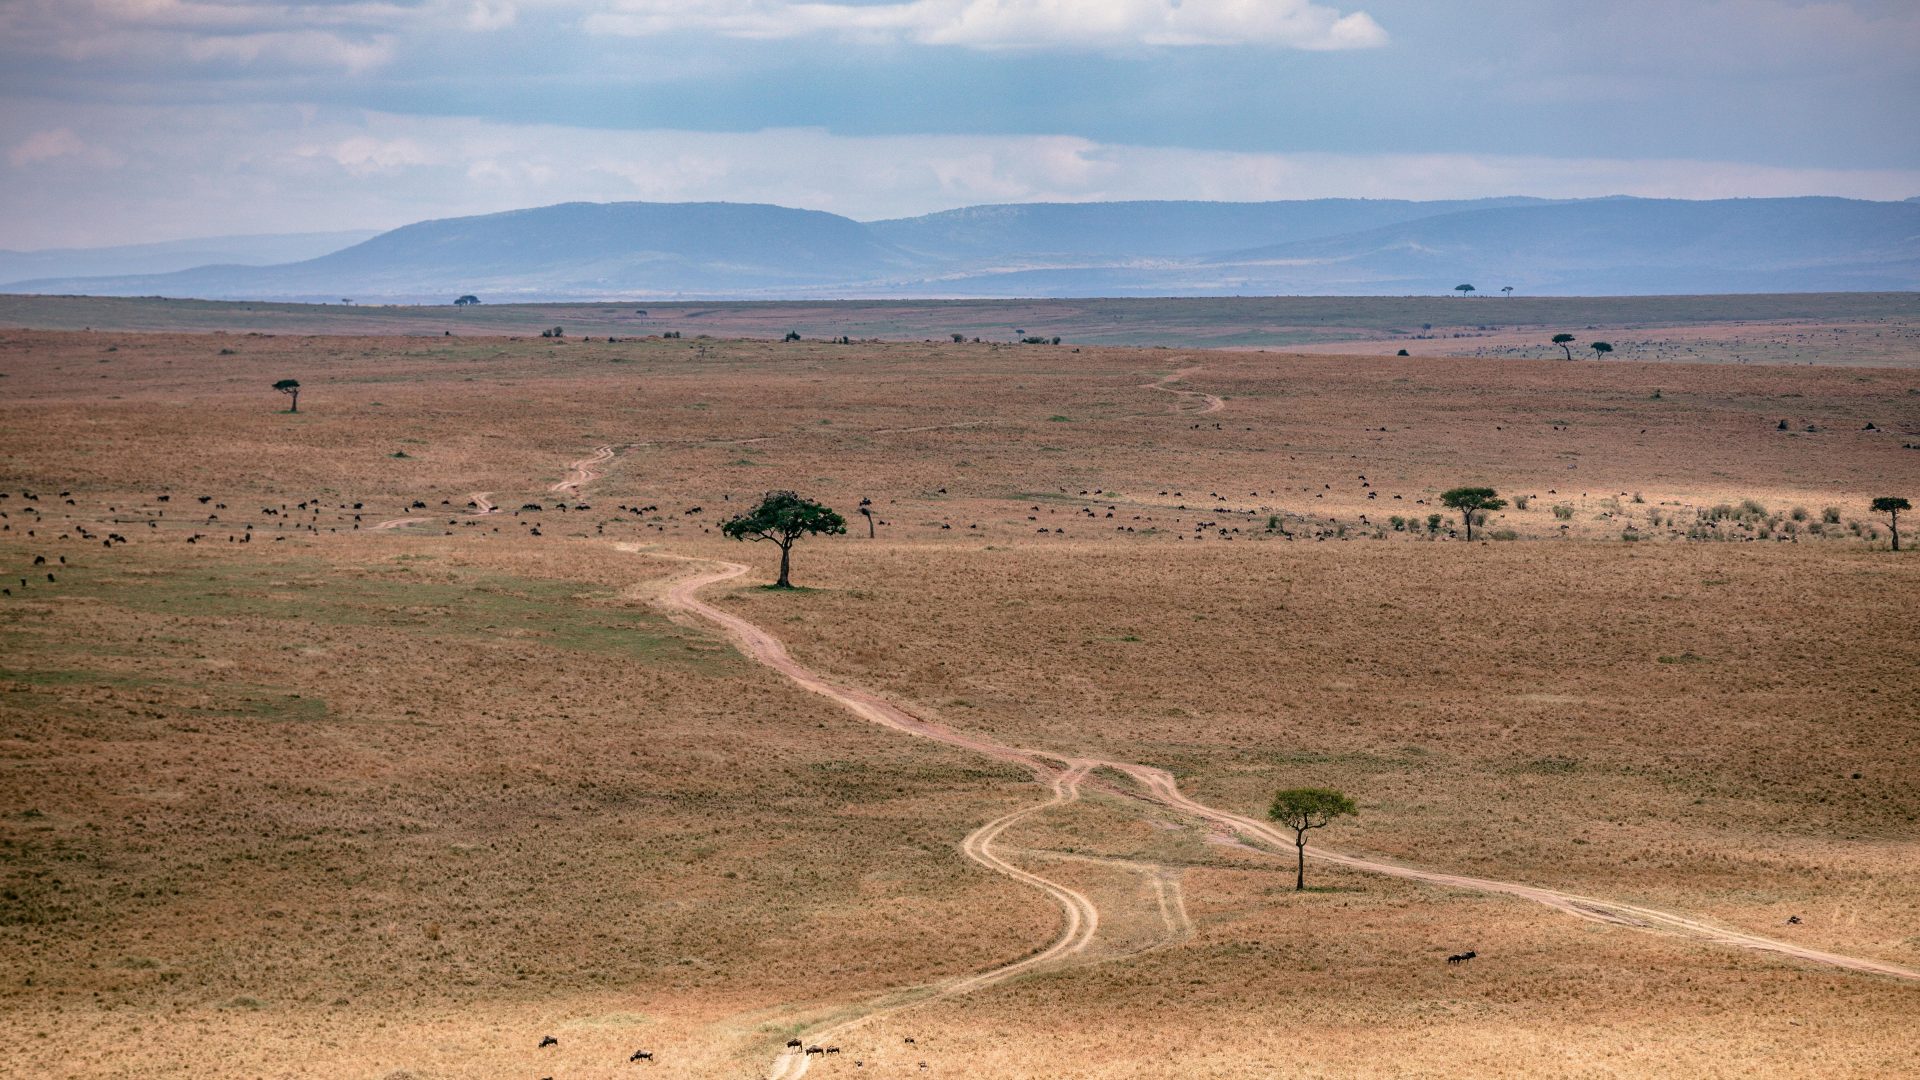 A dry and barren desert landscape.